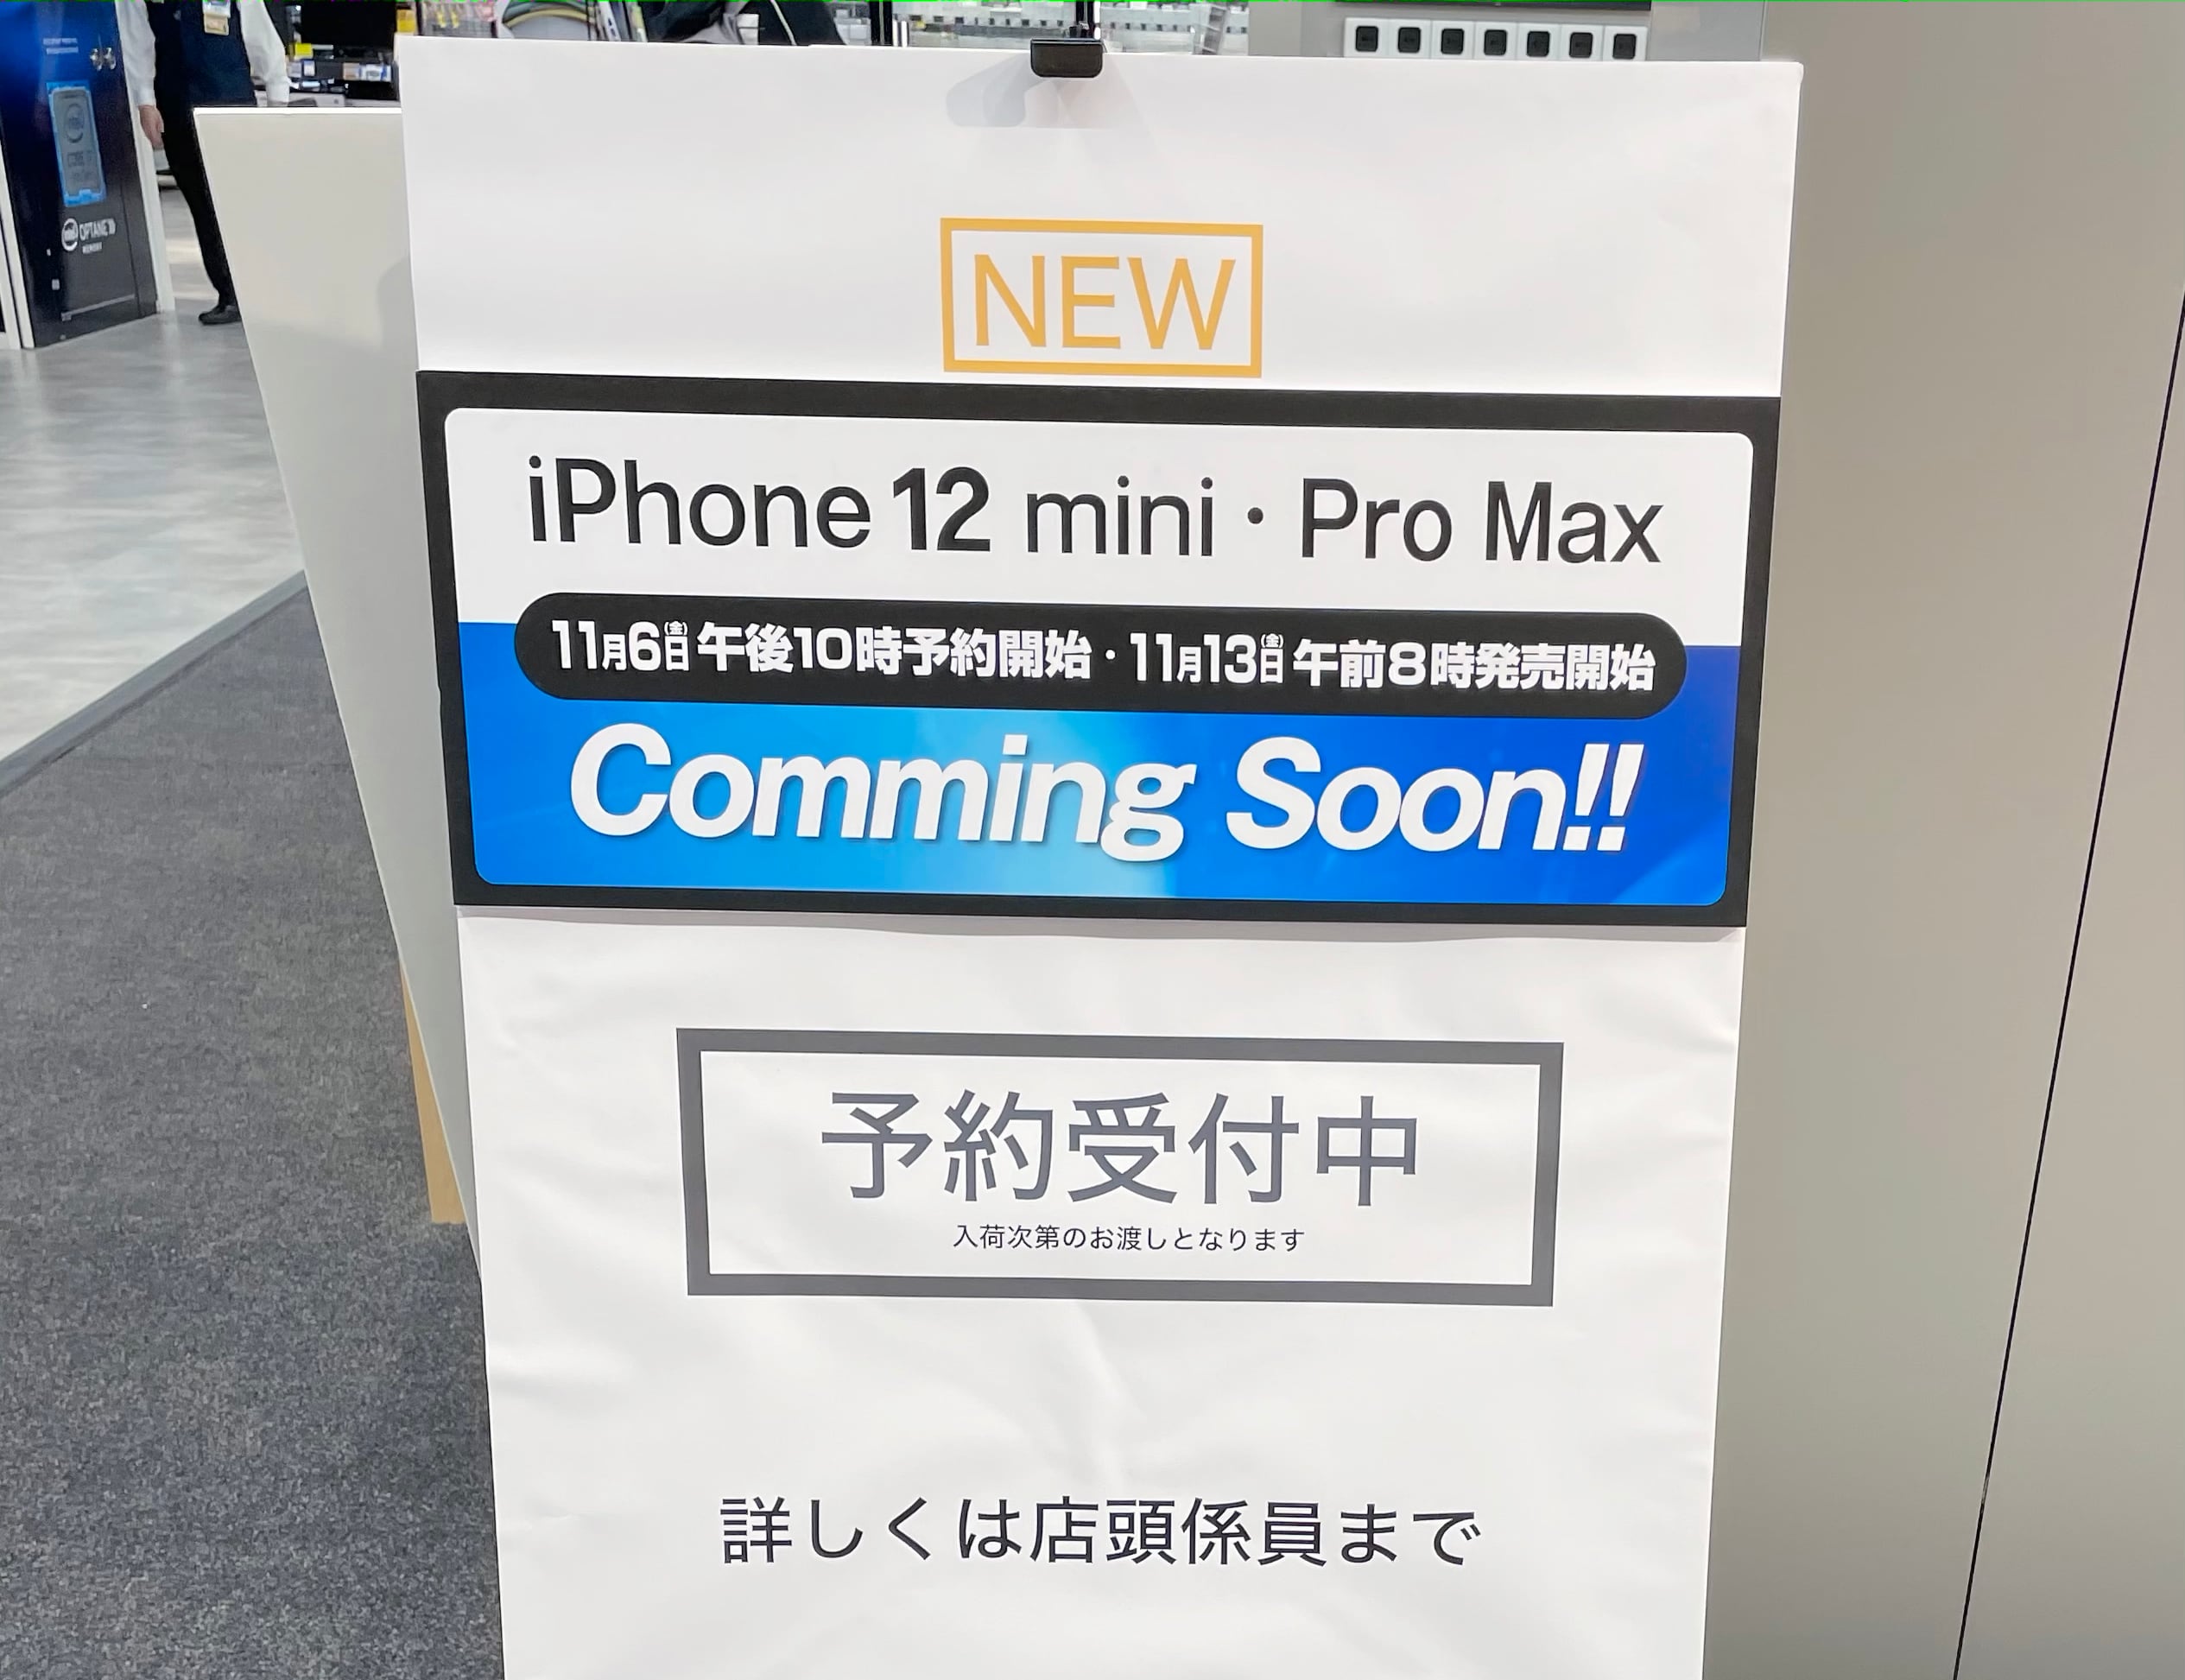 新型iPhone 12シリーズを購入予定の方へ。３大キャリアで買うと約７万円高額になる可能性があります(切実に)